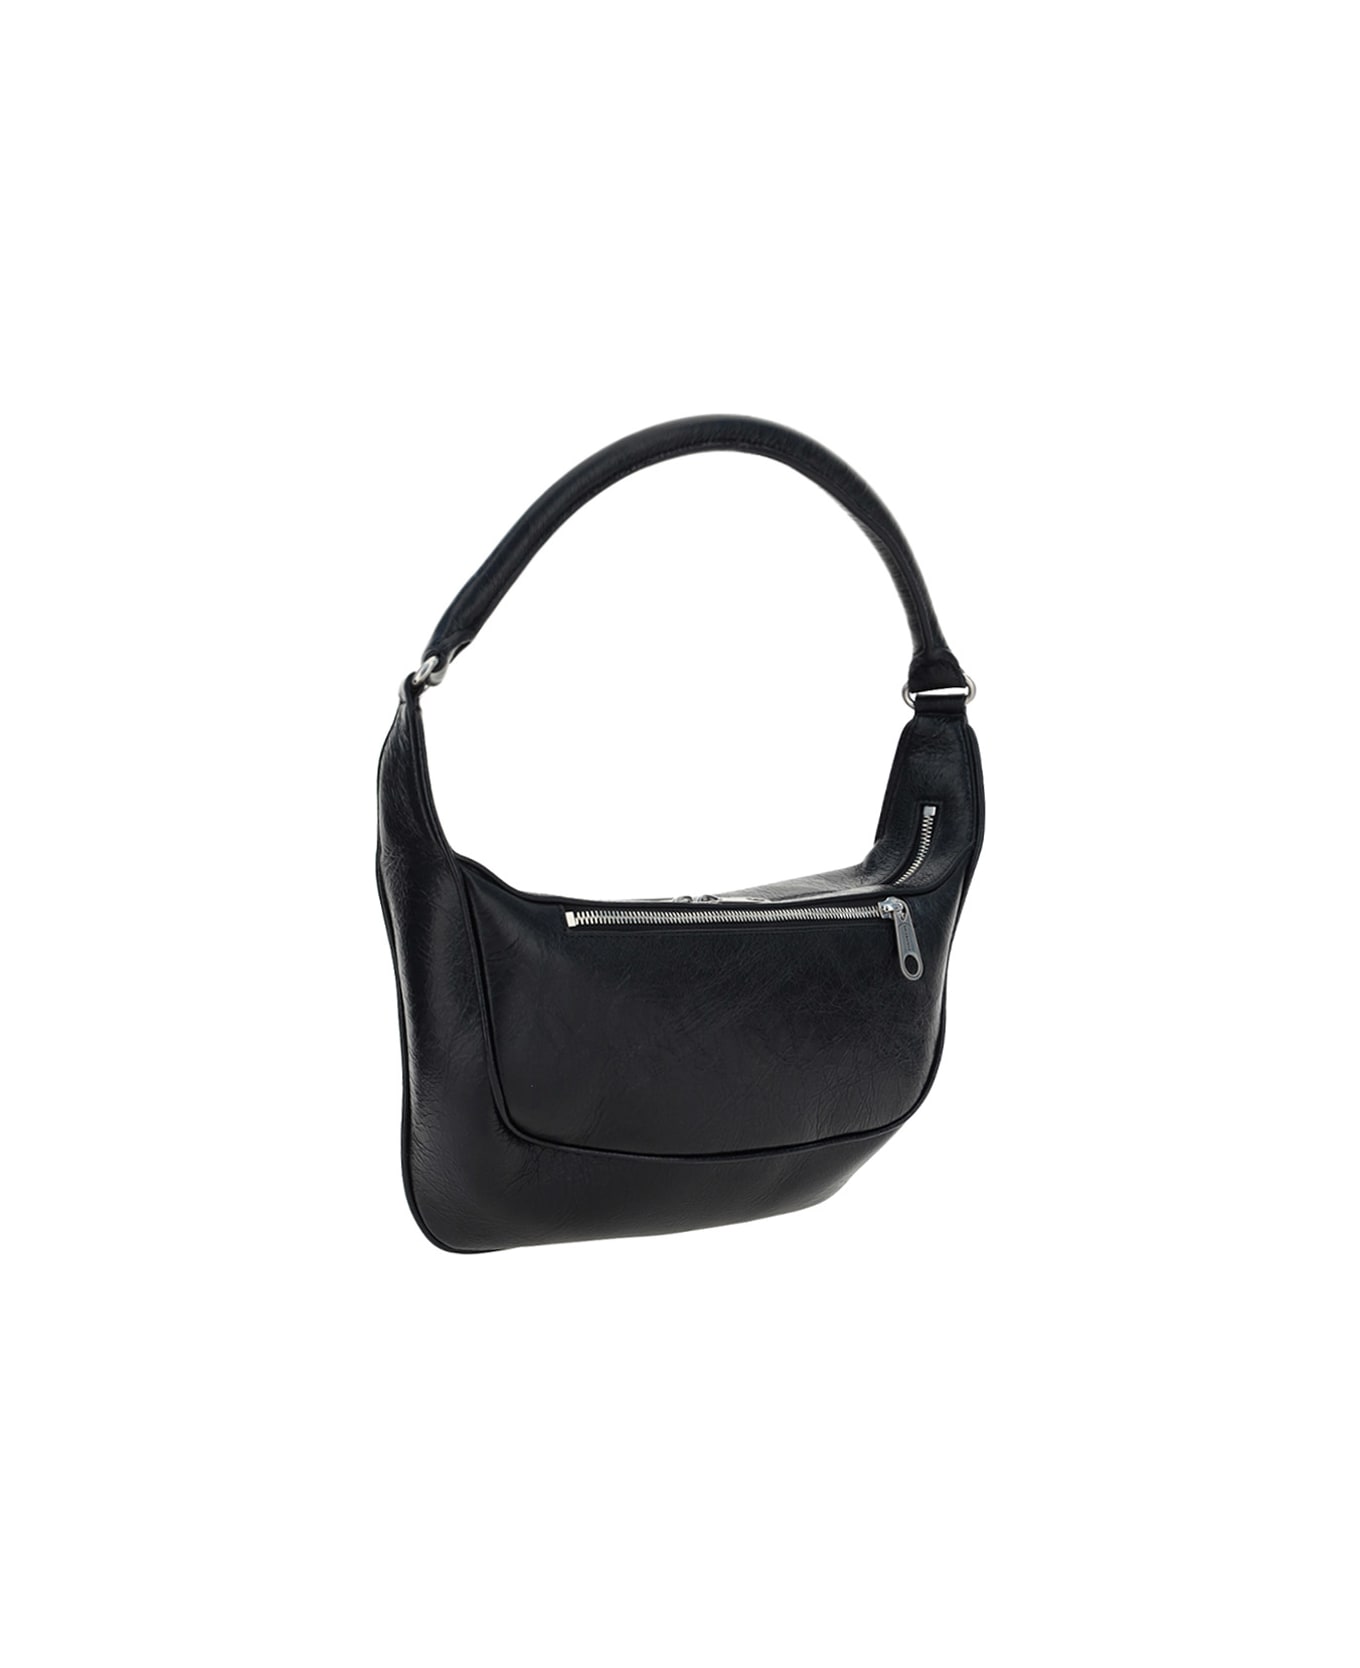 Balenciaga Raver Shoulder Bag - Black